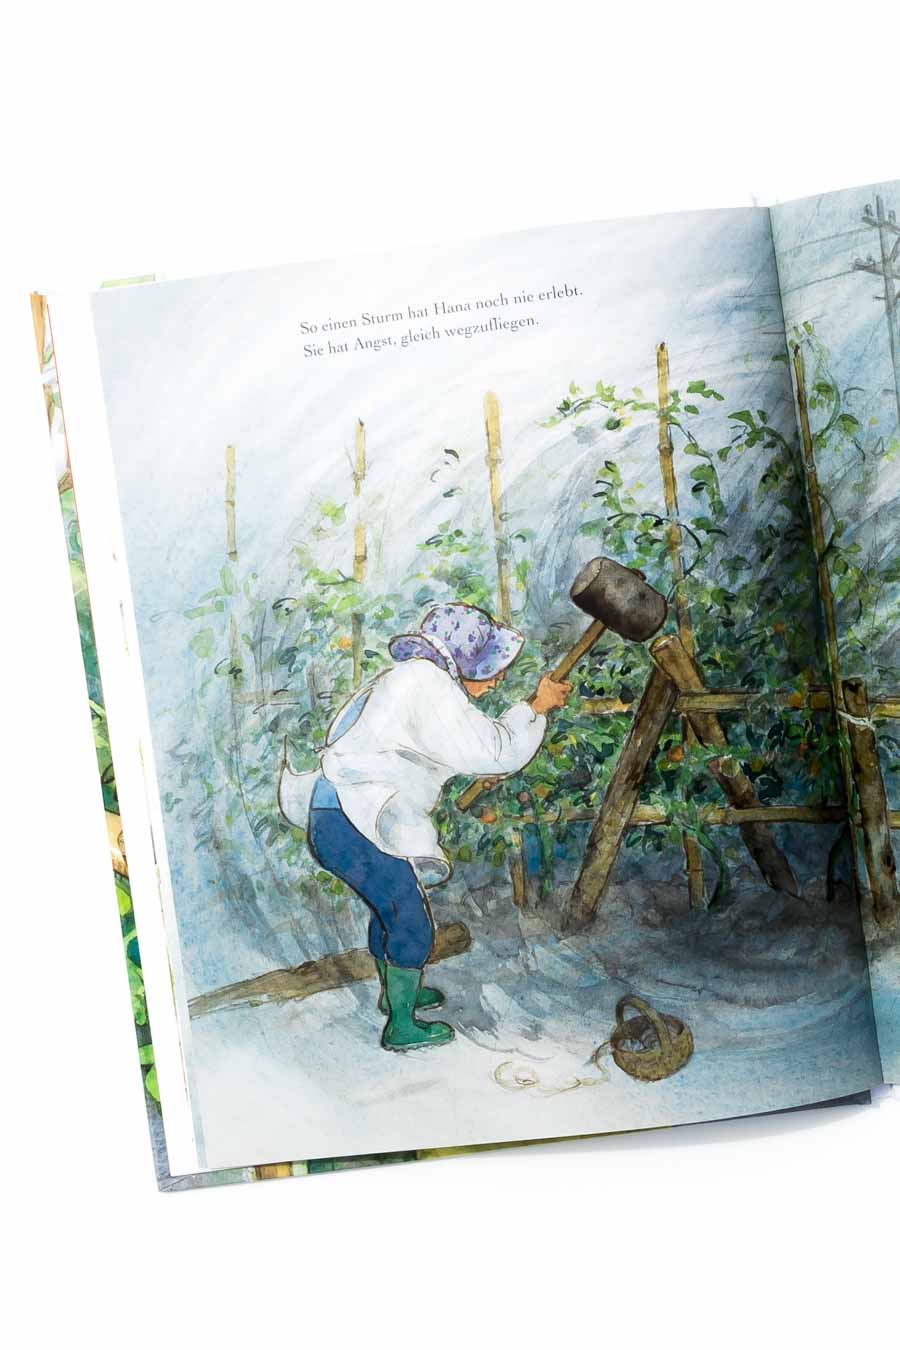 Das Tomatenfest von Satomi Ichikawa. Ein Blick ins Buch sowie eine Buchrezension auf dem Blog "Chez Mama Poule". Sommerbücher, Bilderbücher für Kinder, Bücher für Kita oder Kindergarten. Realistische Bilderbücher.